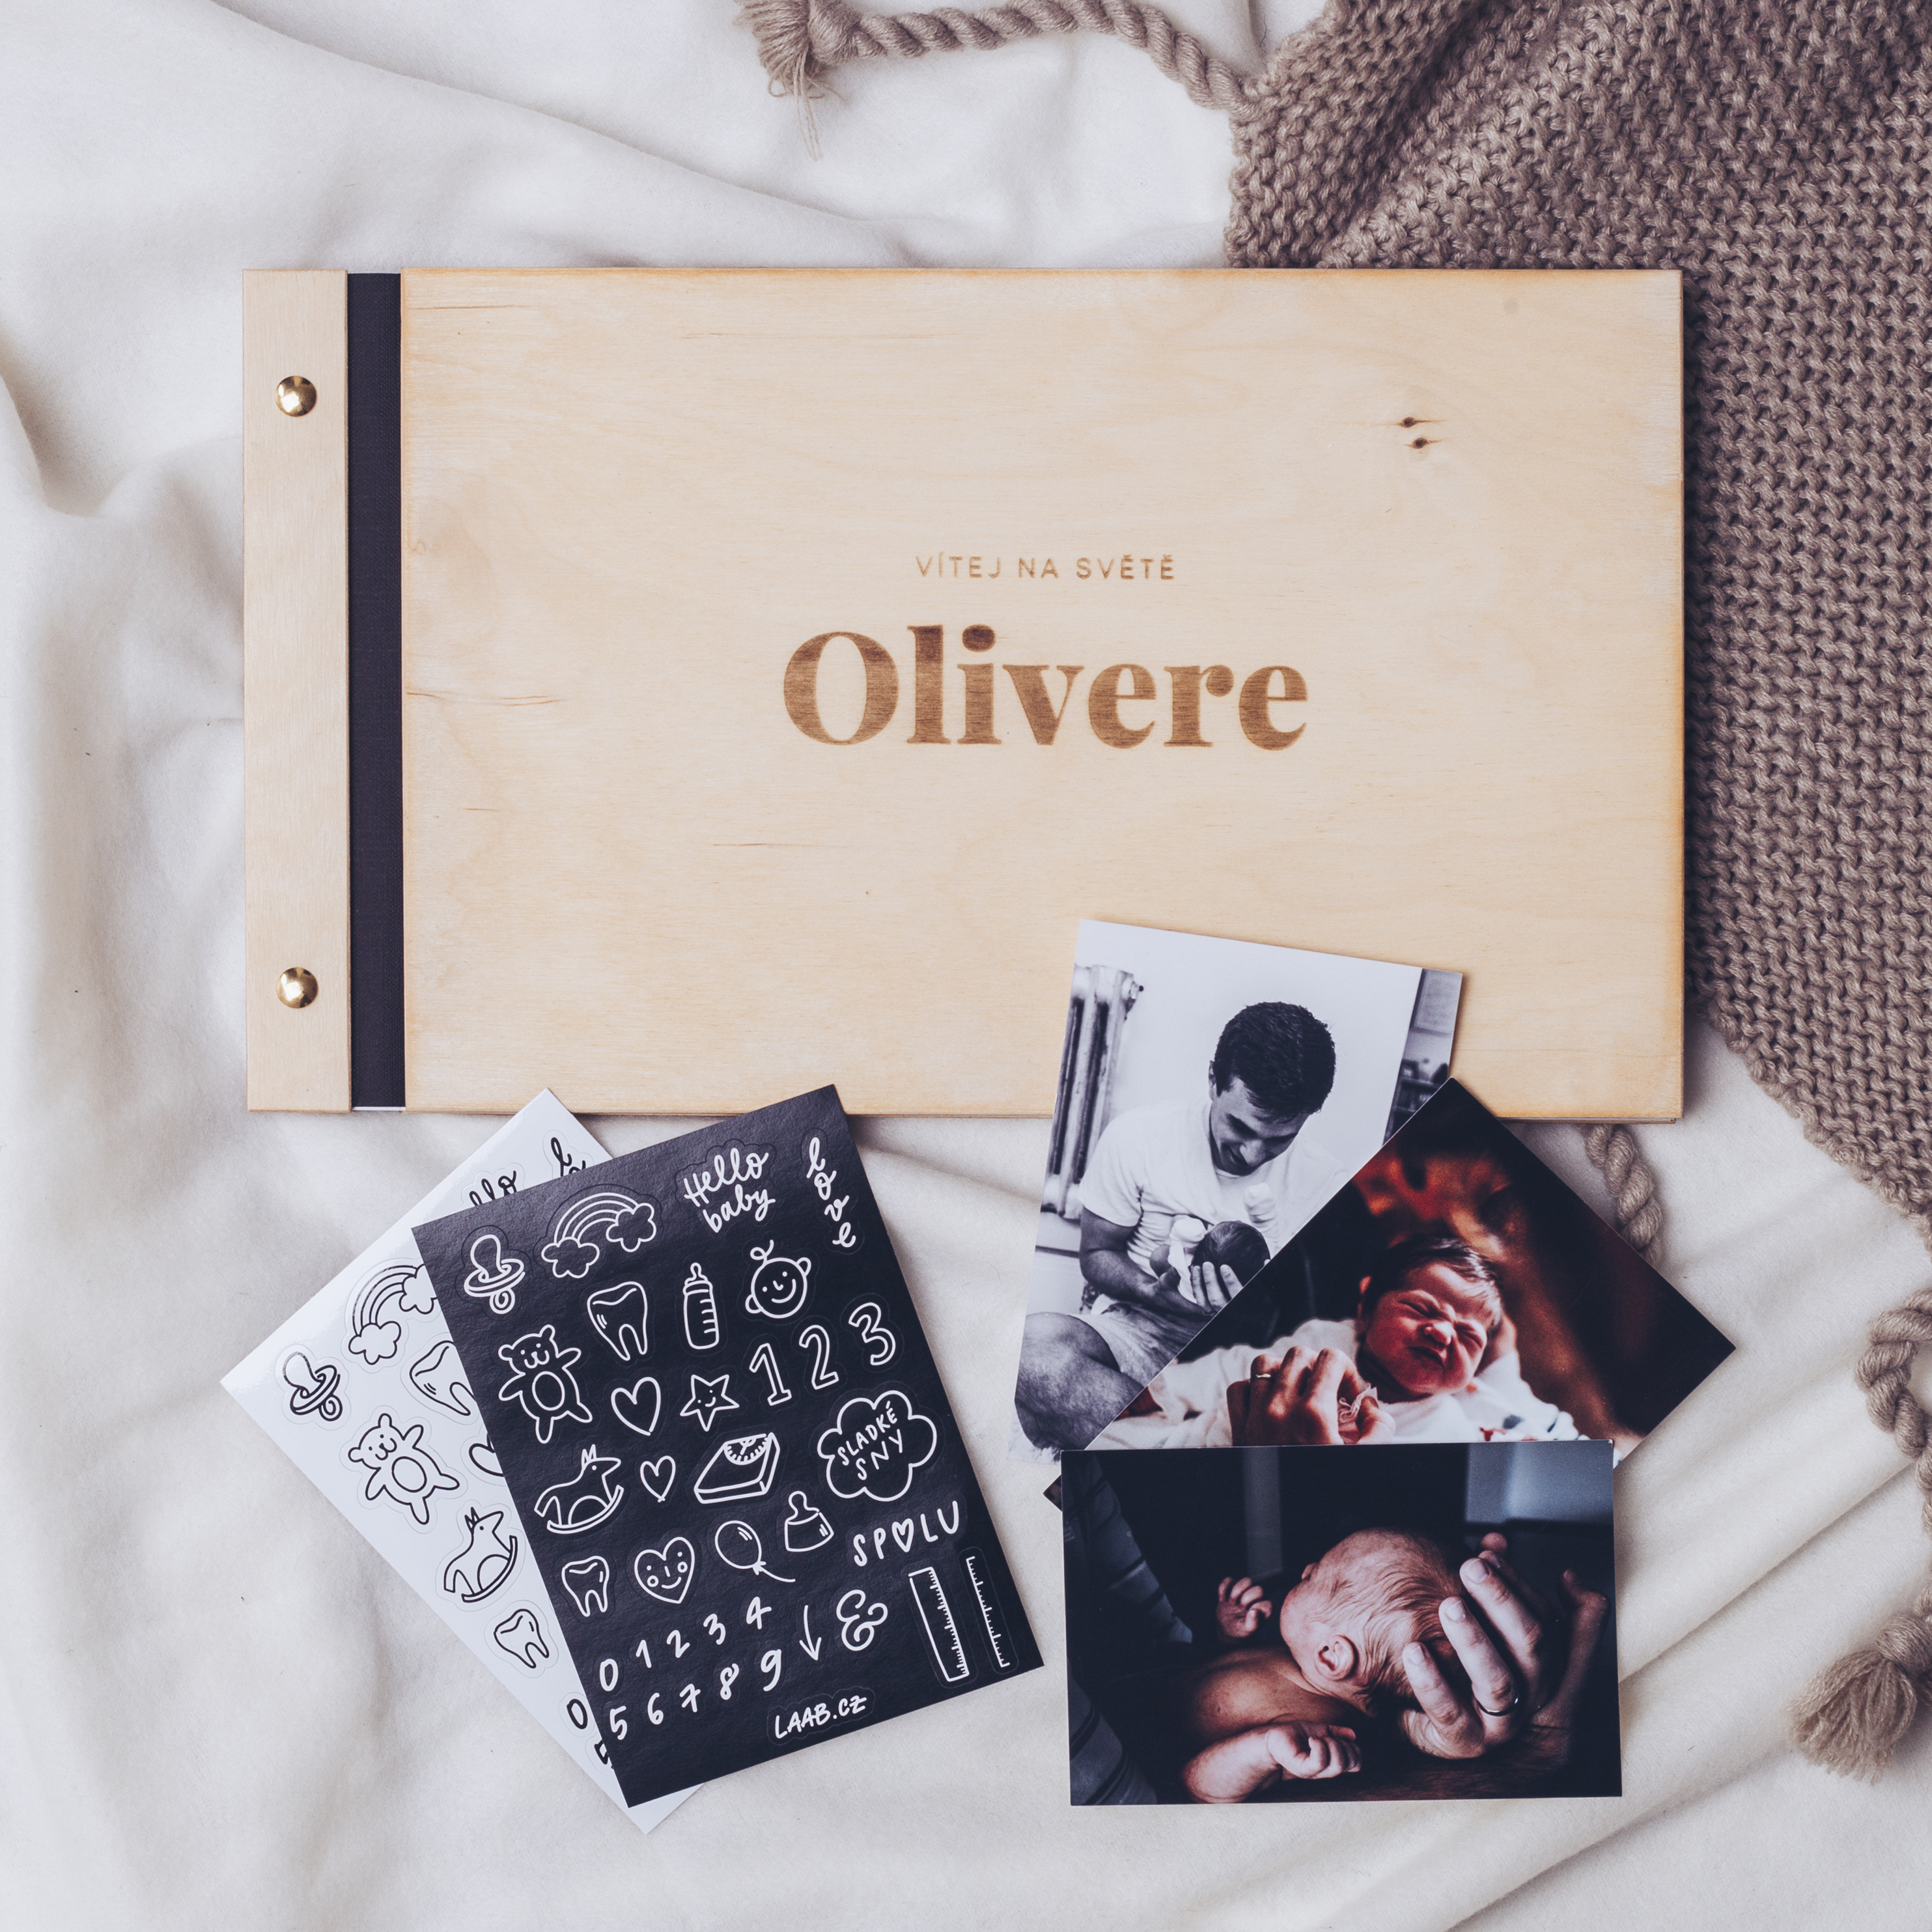 dřevěné fotoalbum Oliver: FORMÁT FOTOALBA na šířku, POČET LISTŮ 45, FORMÁT FOTOALBA čtverec, POČET LISTŮ 30, BARVA LISTŮ černá